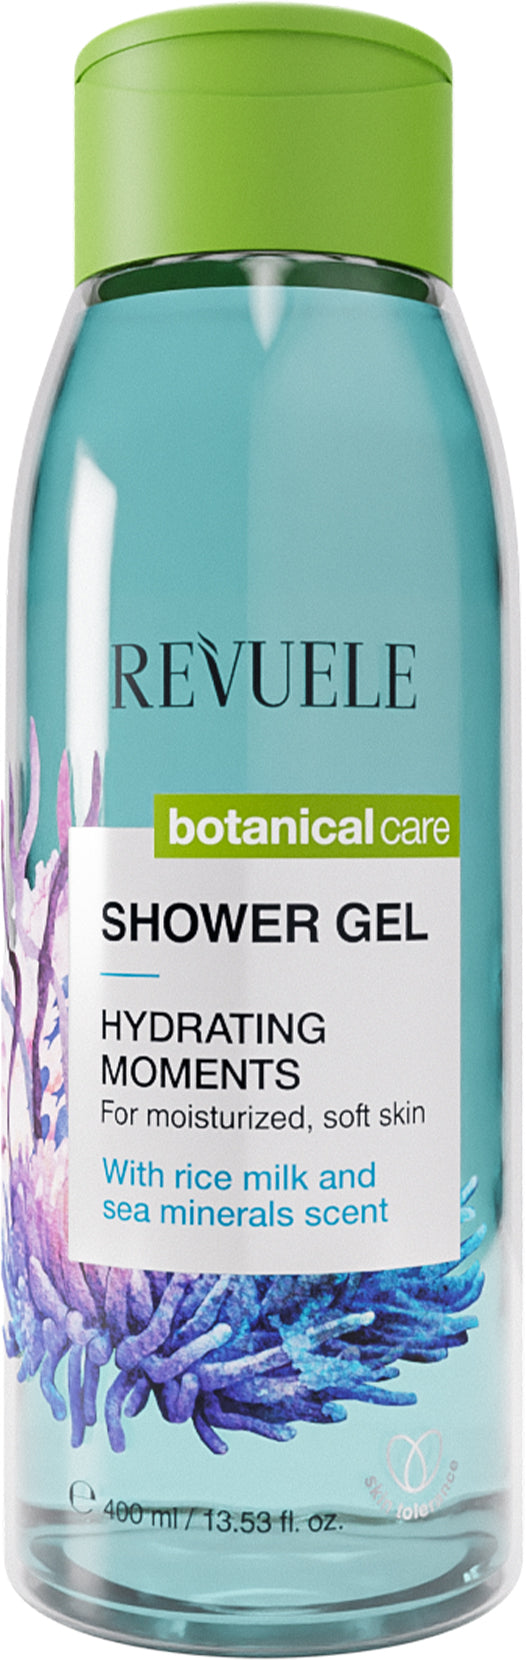 Revuele Shower Gel Hydrating Moments 400Ml